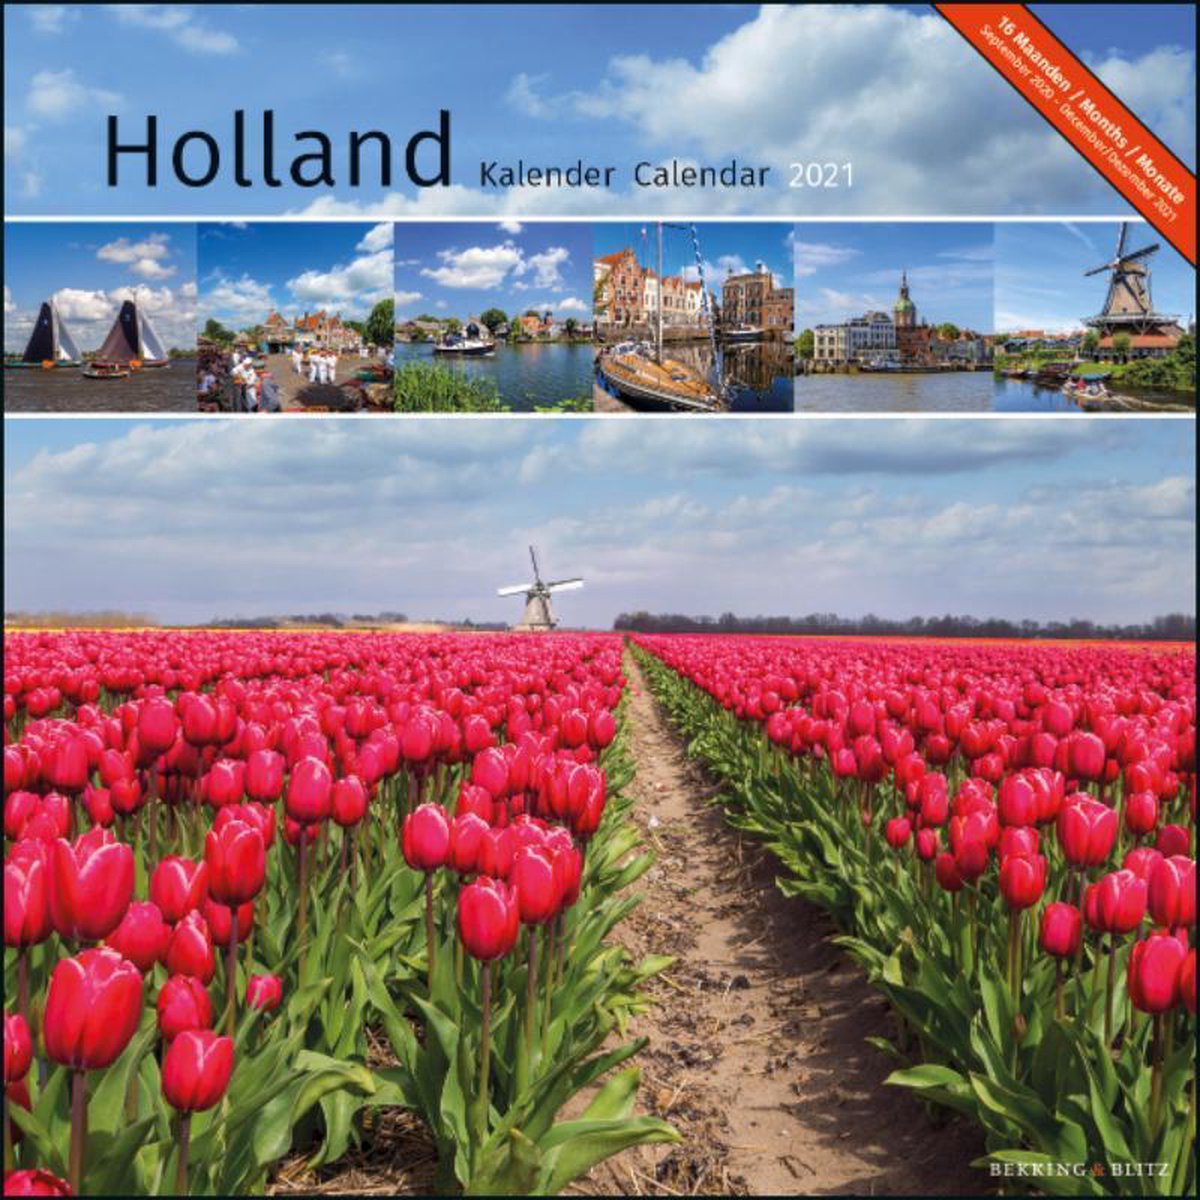 Holland maandkalender 2021 - Merkloos